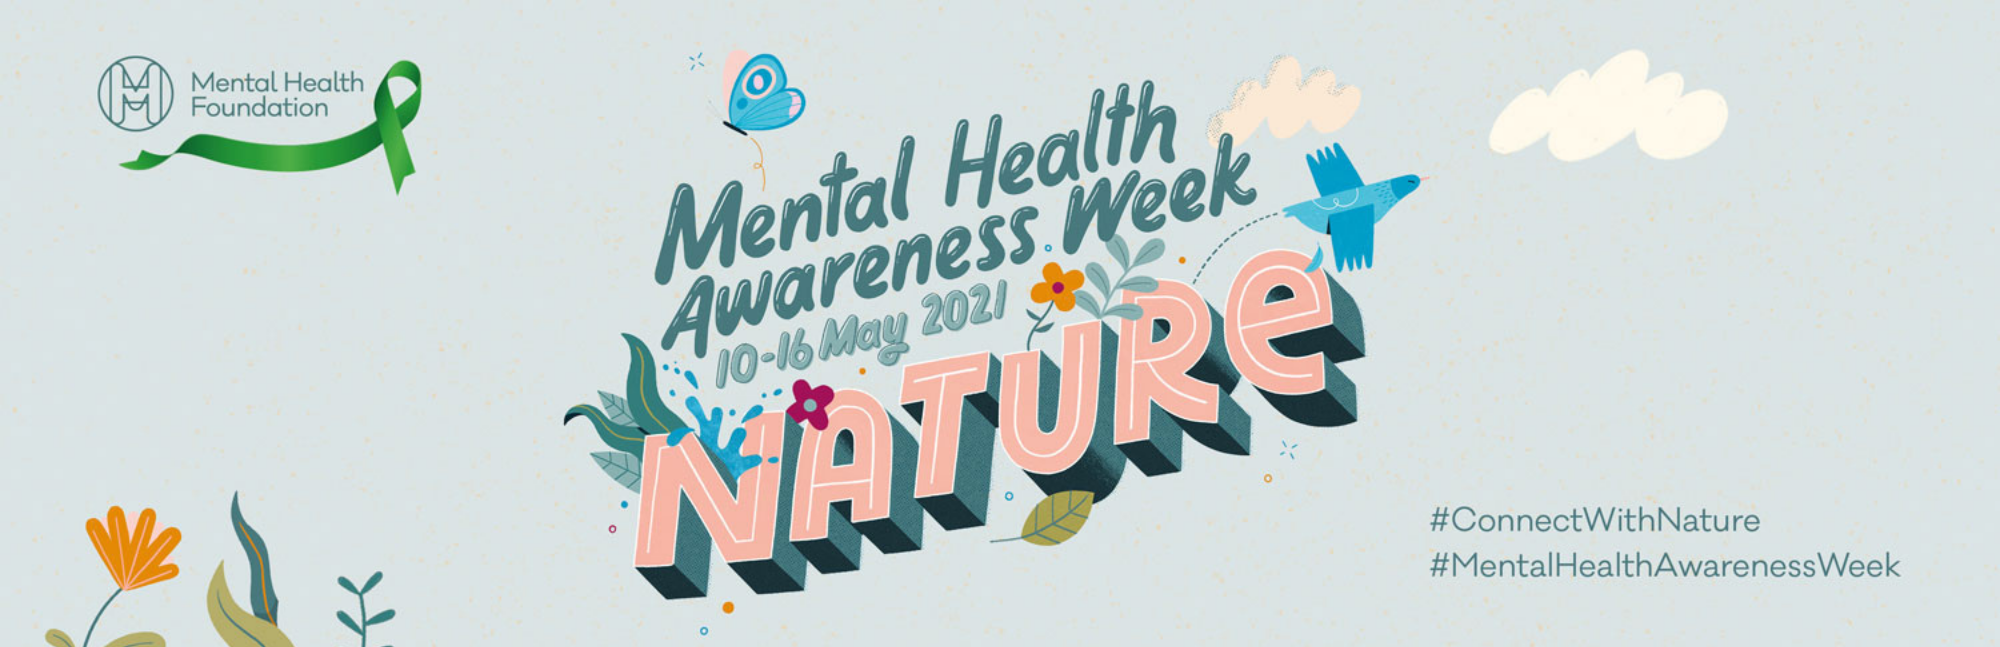 Mental Health Awareness week 2021 banner